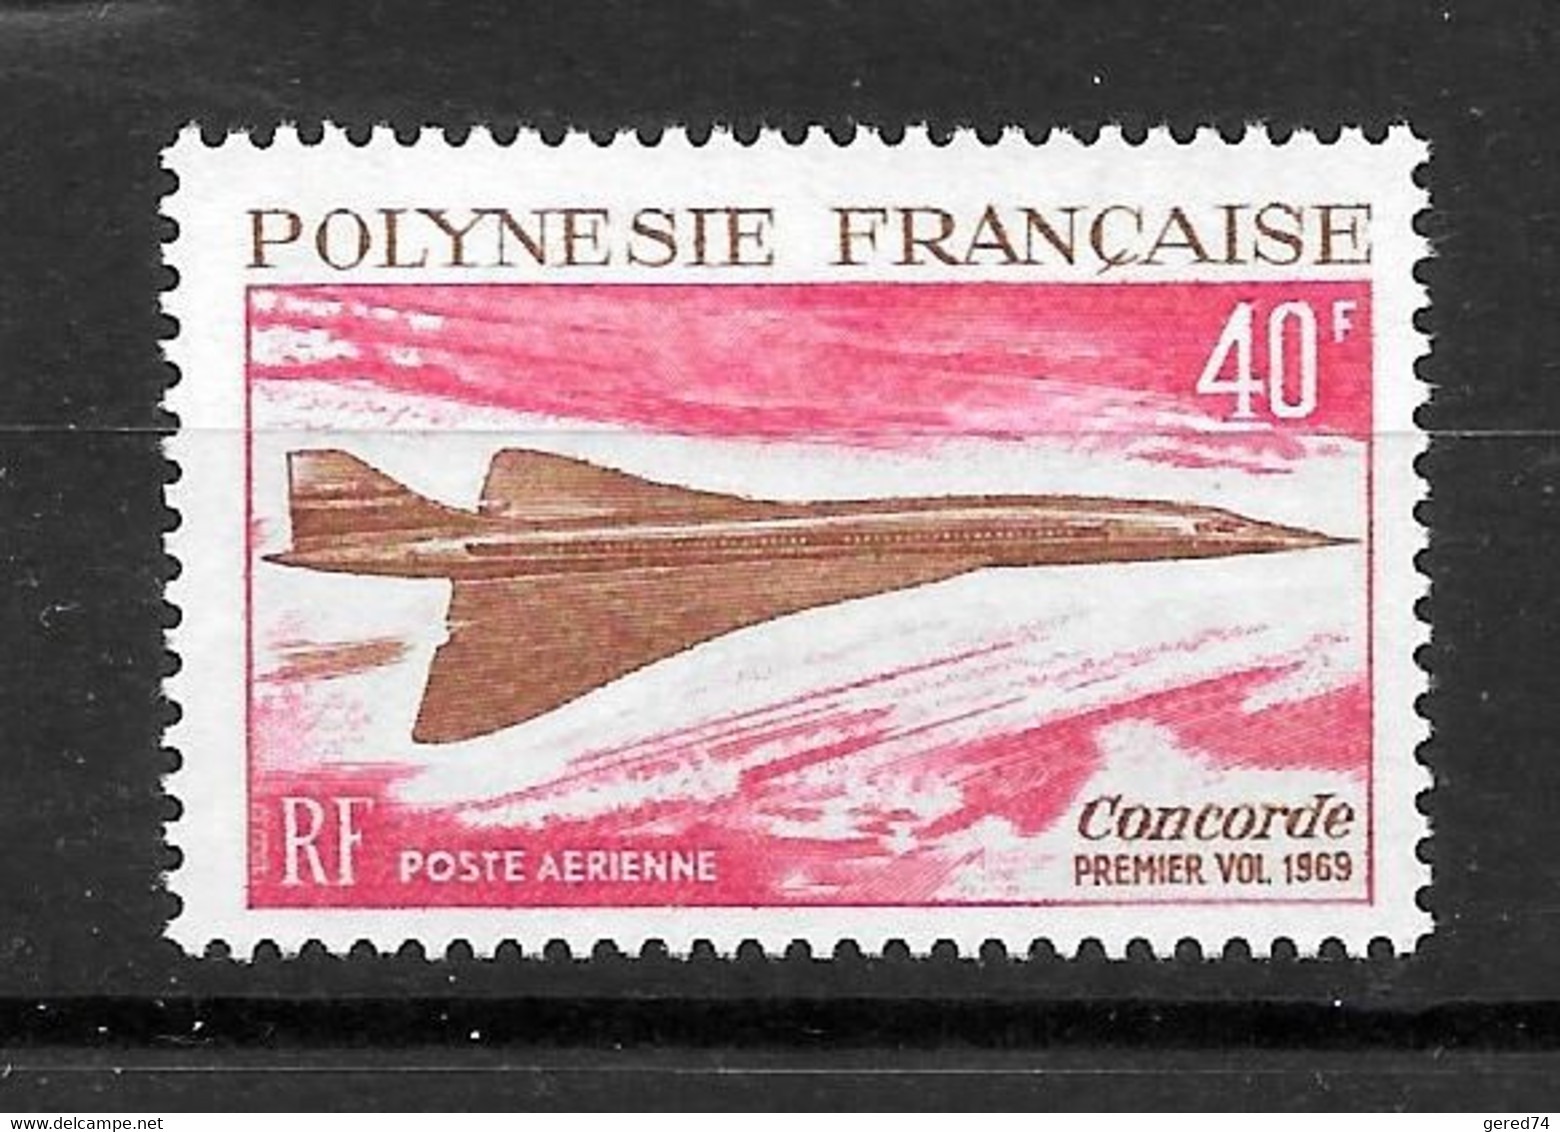 Polynésie Française : Poste Aérienne "Concorde" N° 27 ** (cote 66,oo €) - Neufs